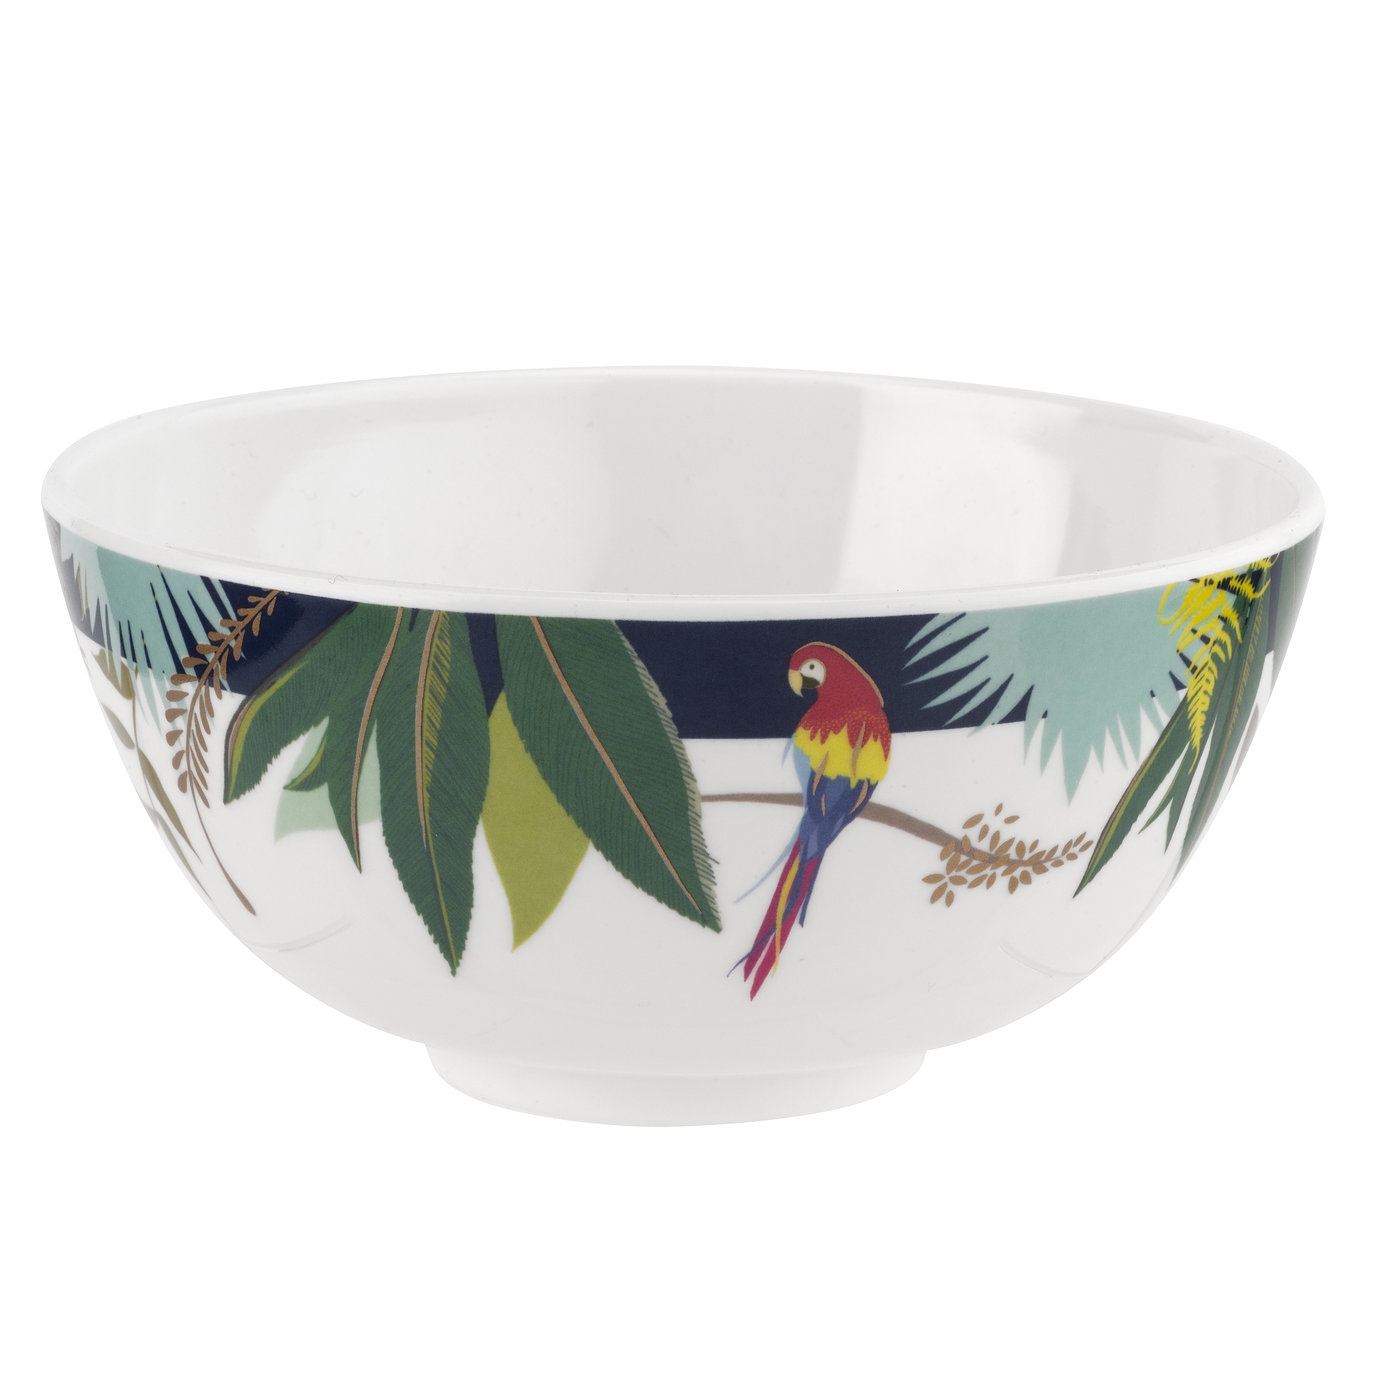 포트메리온 '사라 밀러 런던' 공기 그릇 4개 세트 Sara Miller London for Portmeirion Parrot Collection 6 Inch Melamine Bowl Set of 4